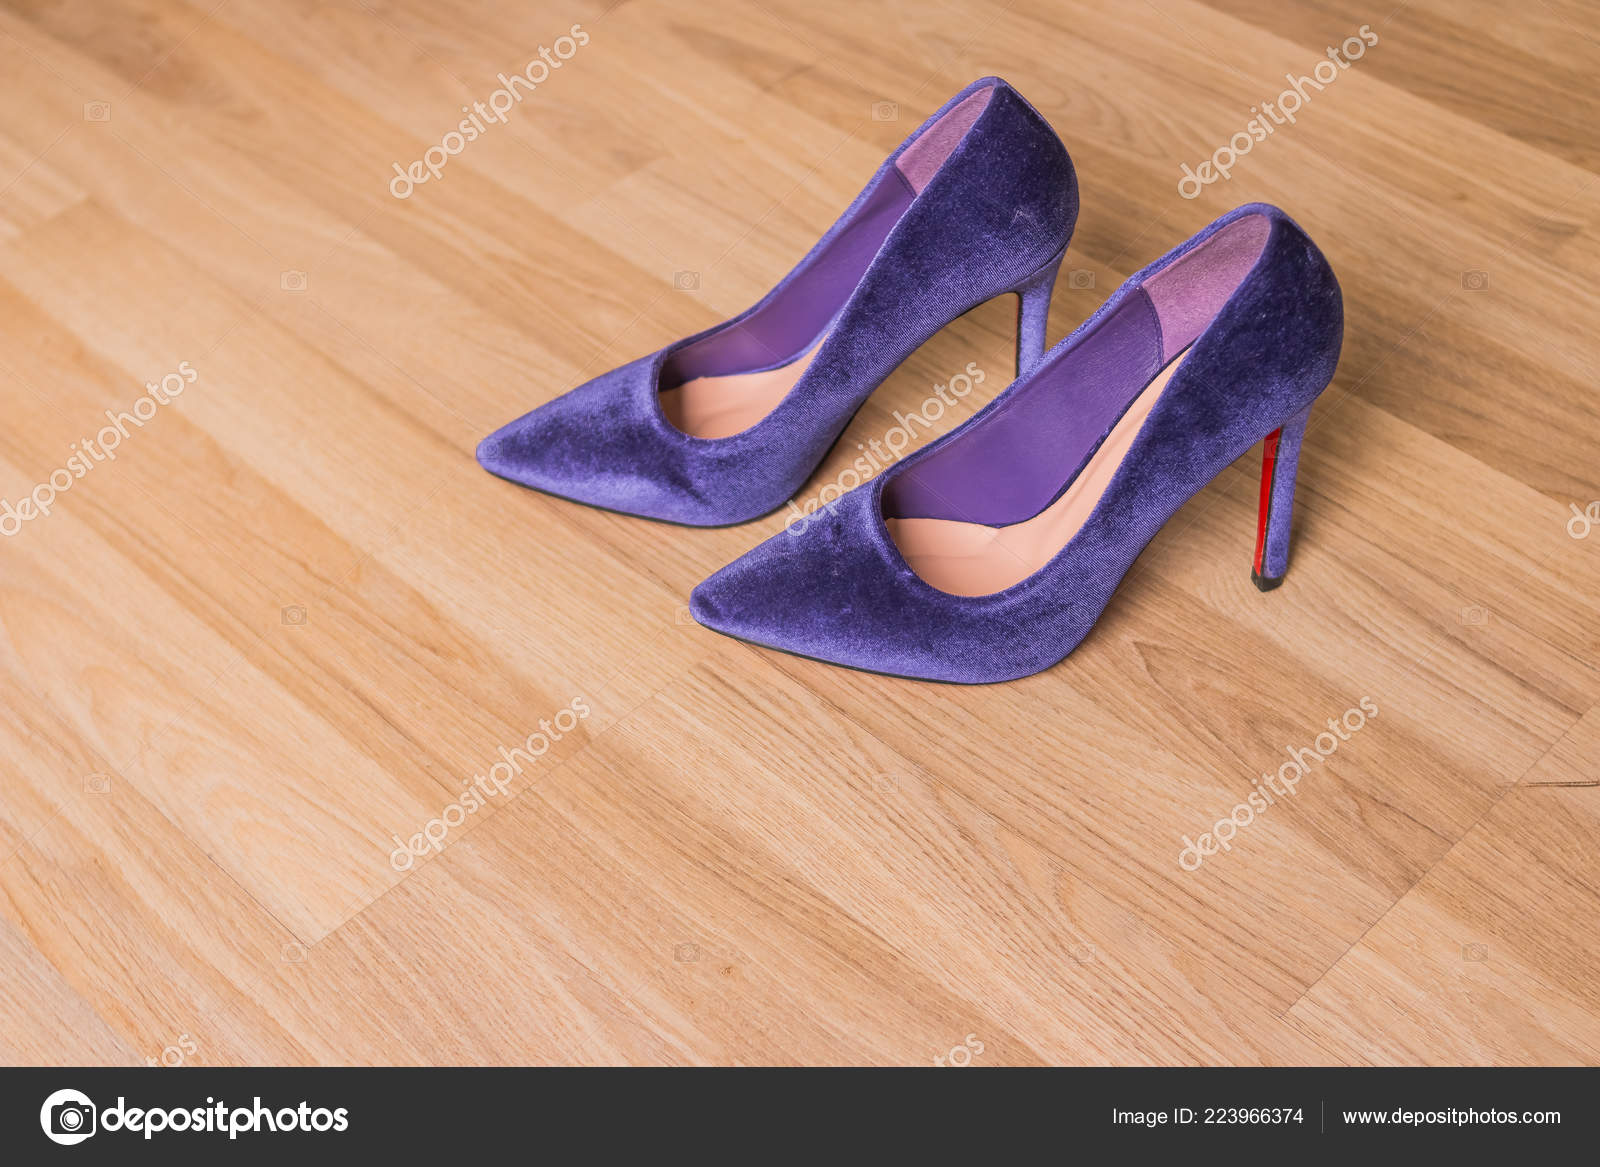 Velvet heels Jorge Bischoff Purple size 35 EU in Velvet - 33196049